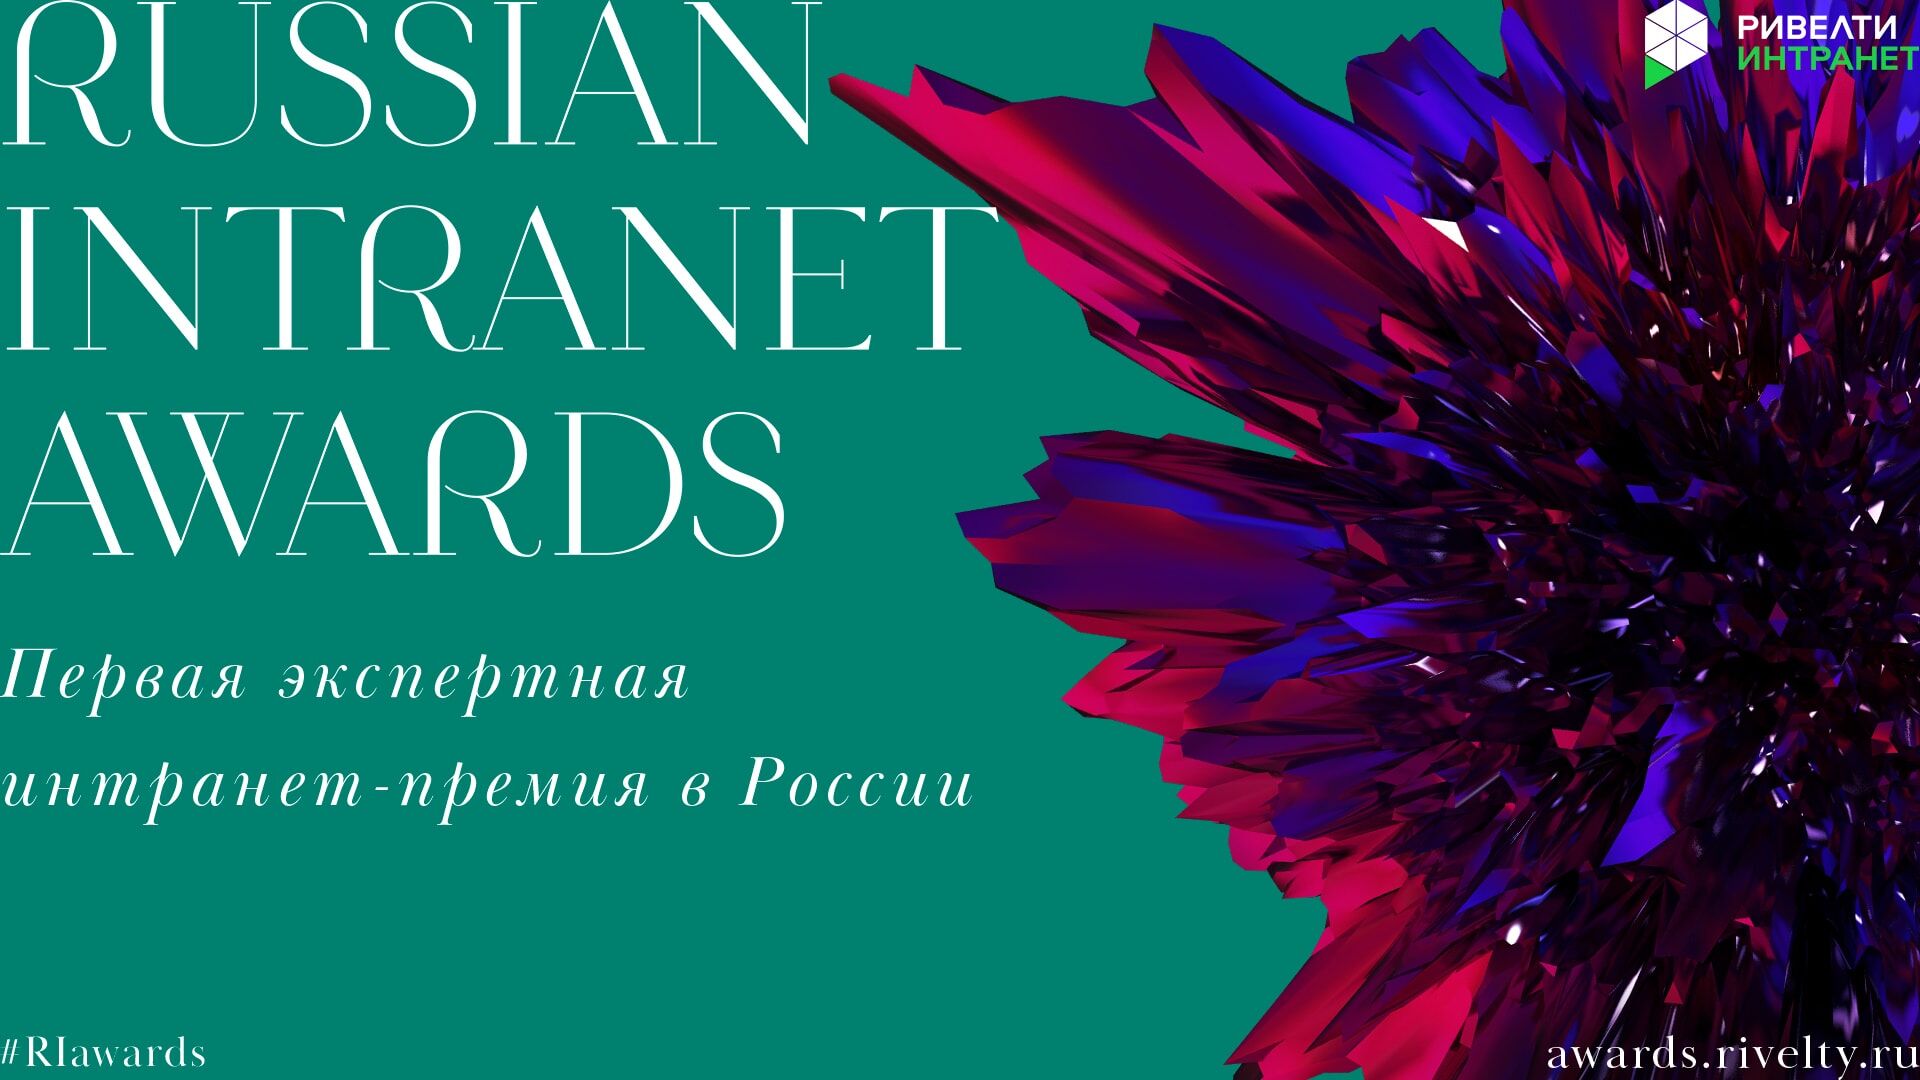 Как заполнить заявку на Russian Intranet Awards, чтобы победить